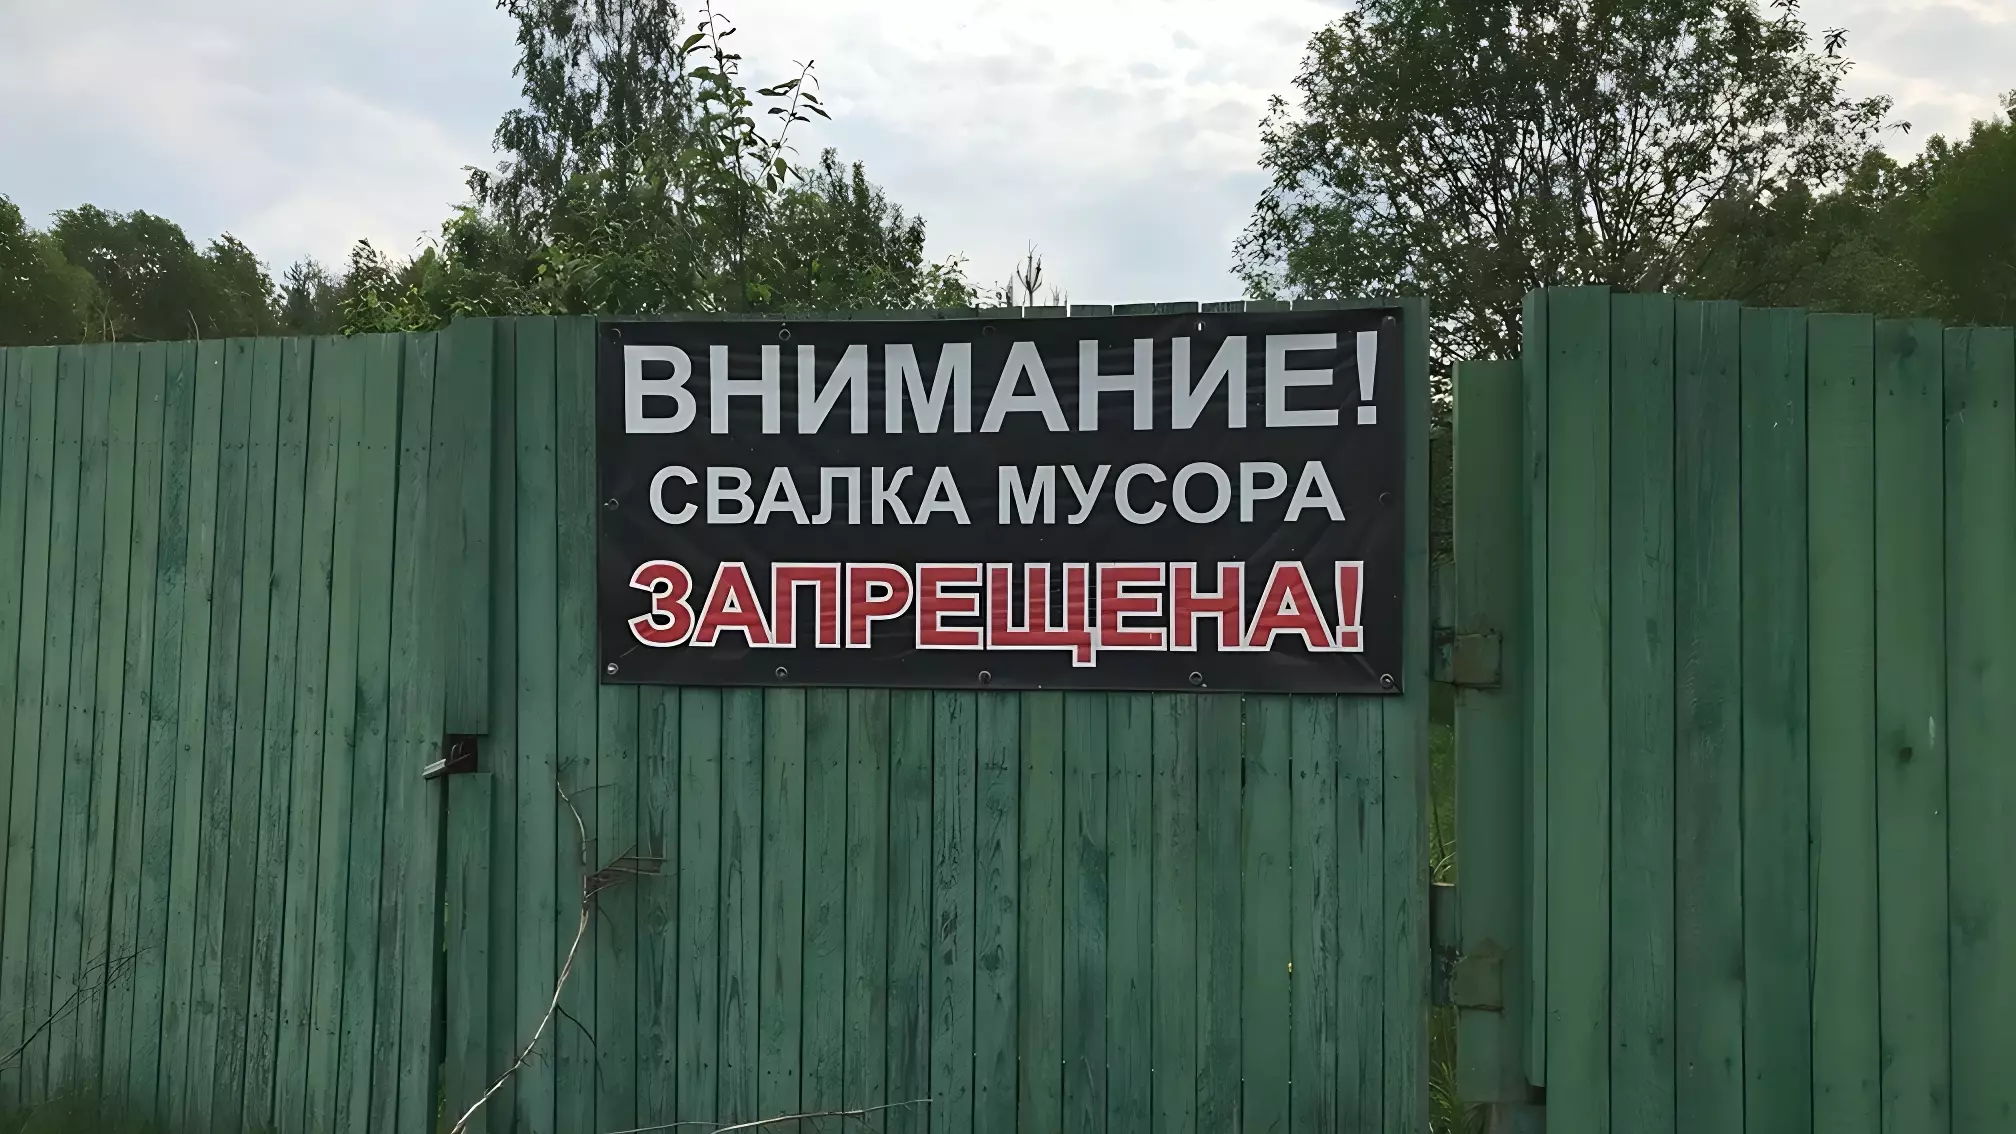 Сургутский магазин «Монетка» устроил свалку на своей территории